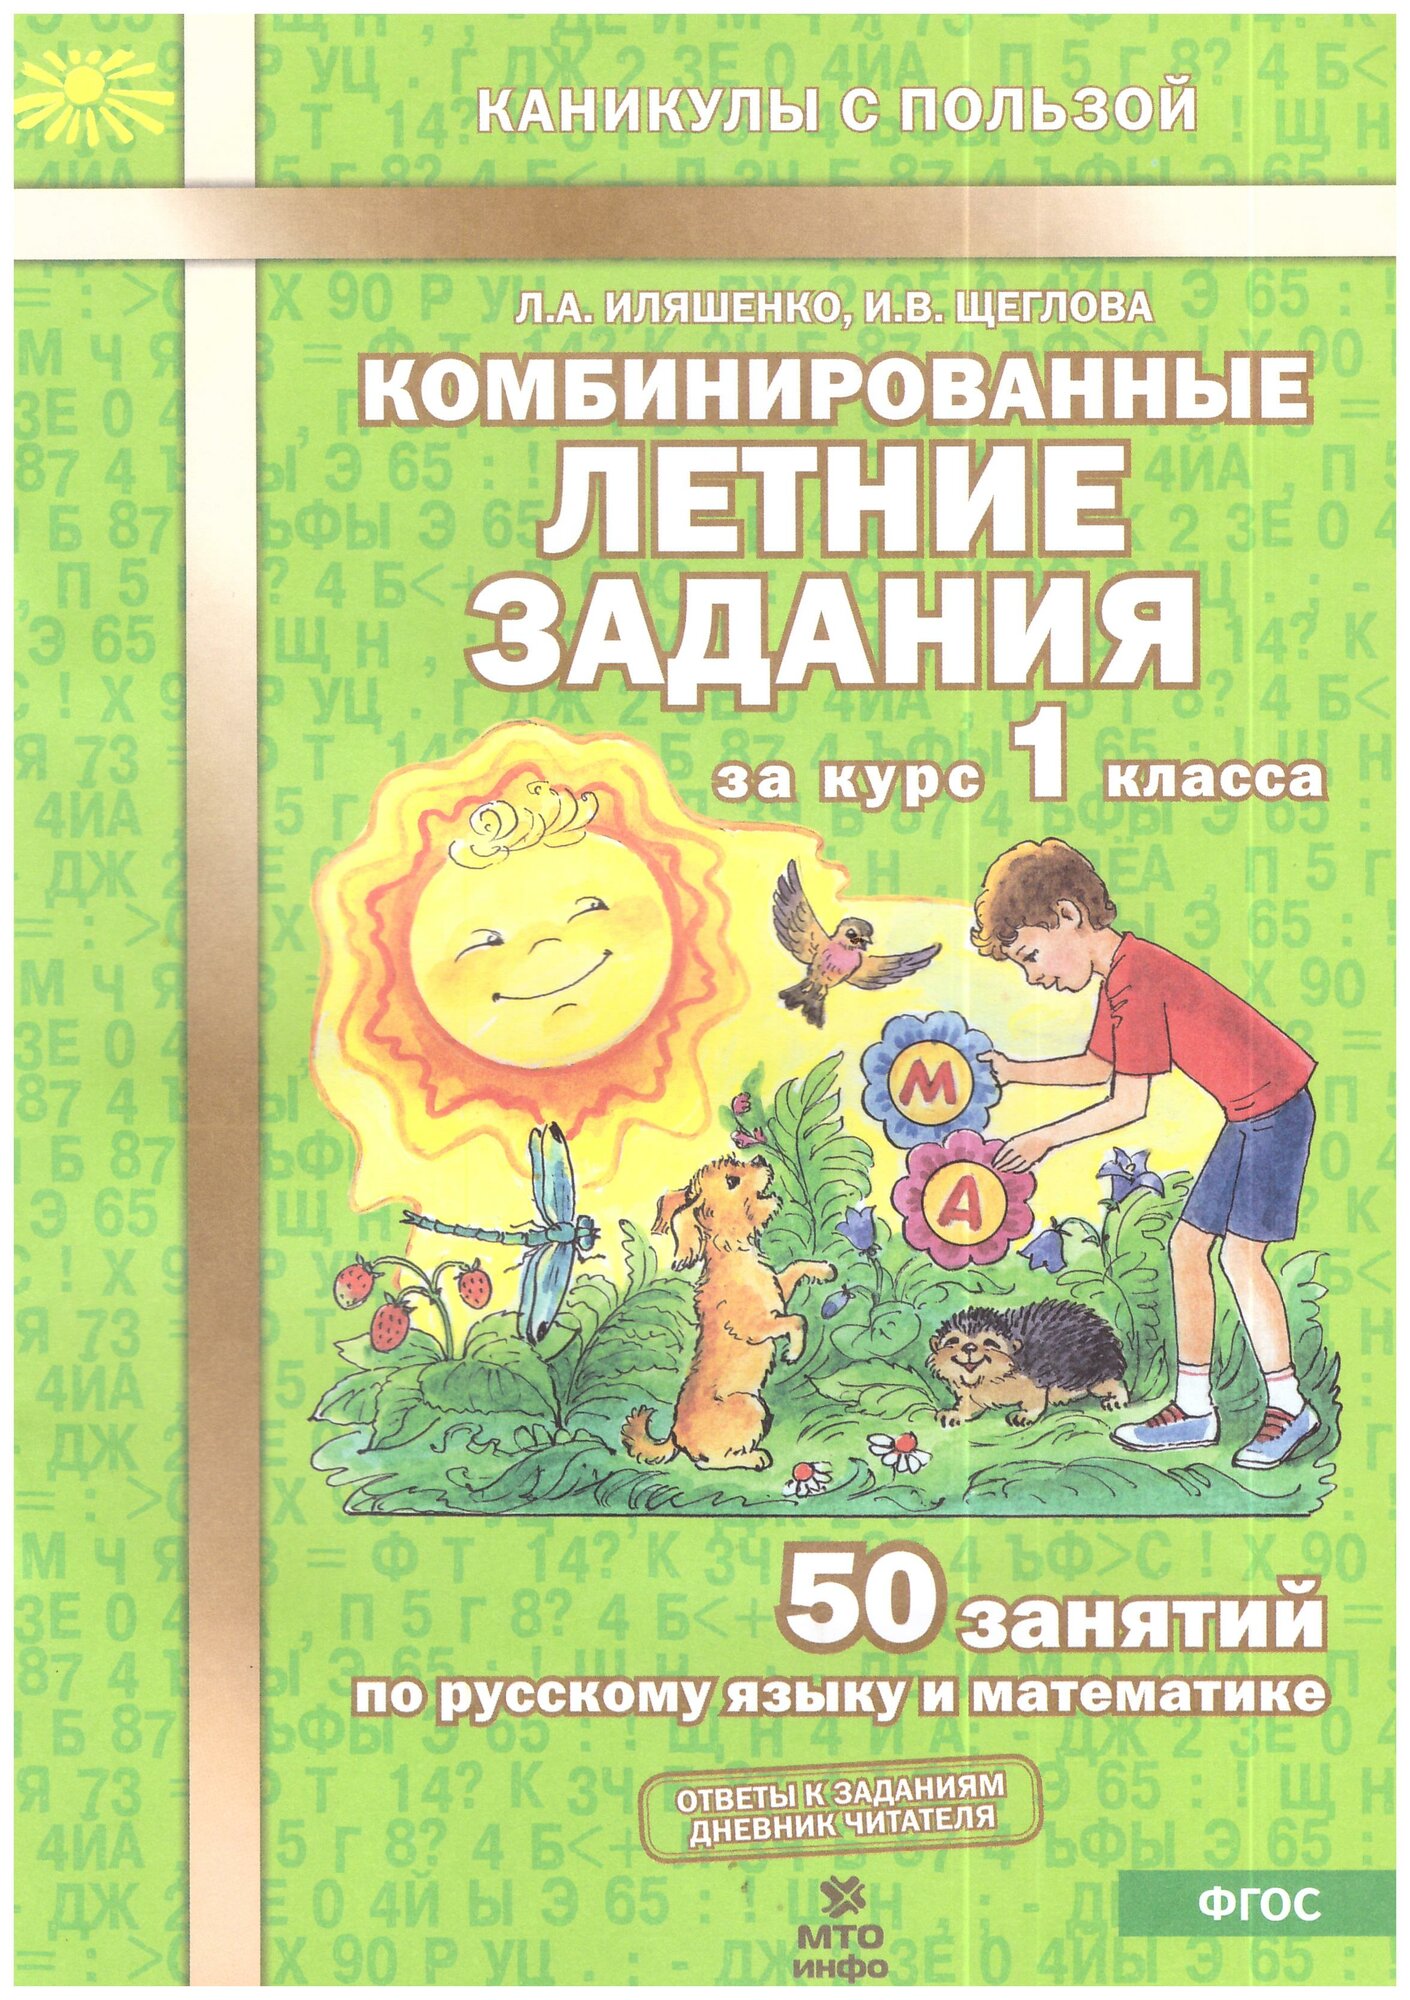 Иляшенко. Комбинированные летние задания за курс 1 кл. 50 занятий по русскому языку и математике.